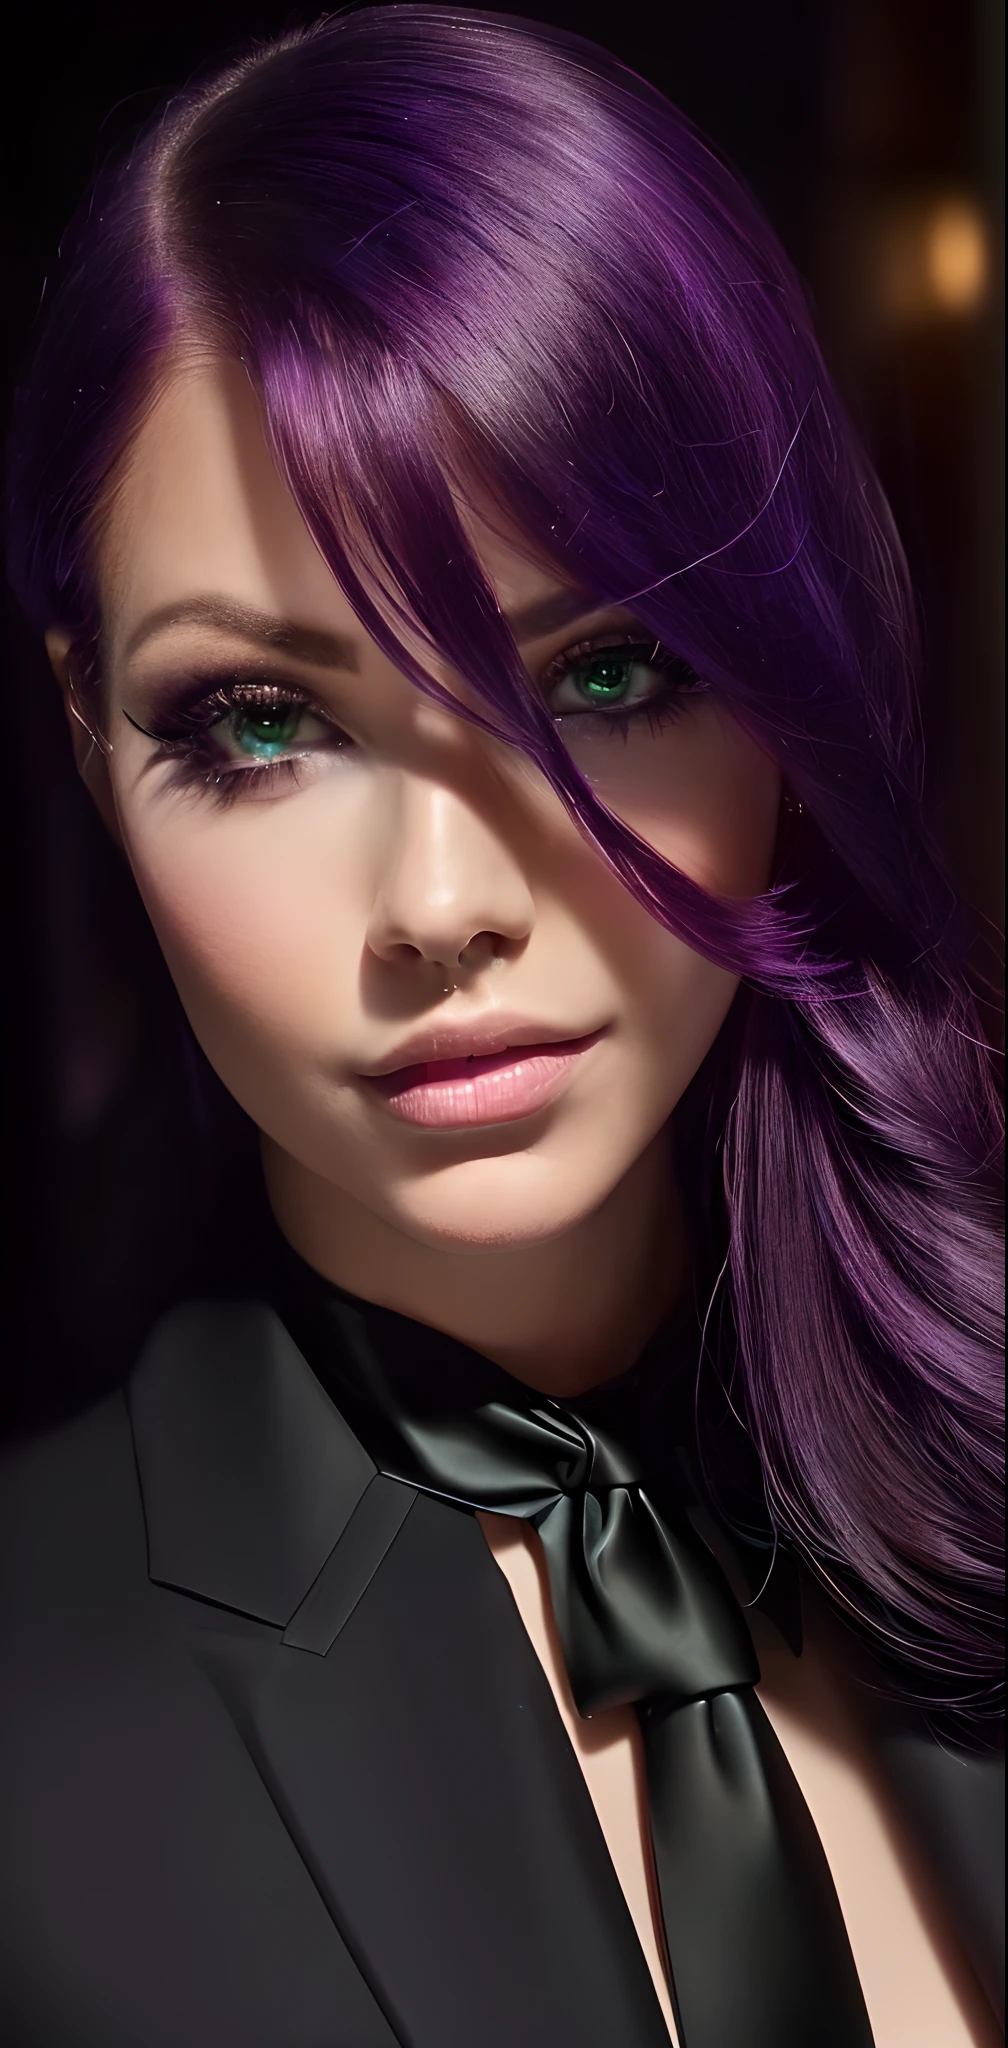 a قرب من امرأة نموذجية with purple hair and a ((ربطة عنق سوداء)), صورة فتاة طالبة الفضاء, صورة فرسان زوديا امرأة, قرب من امرأة نموذجية, , مع عيون خضراء متوهجة,